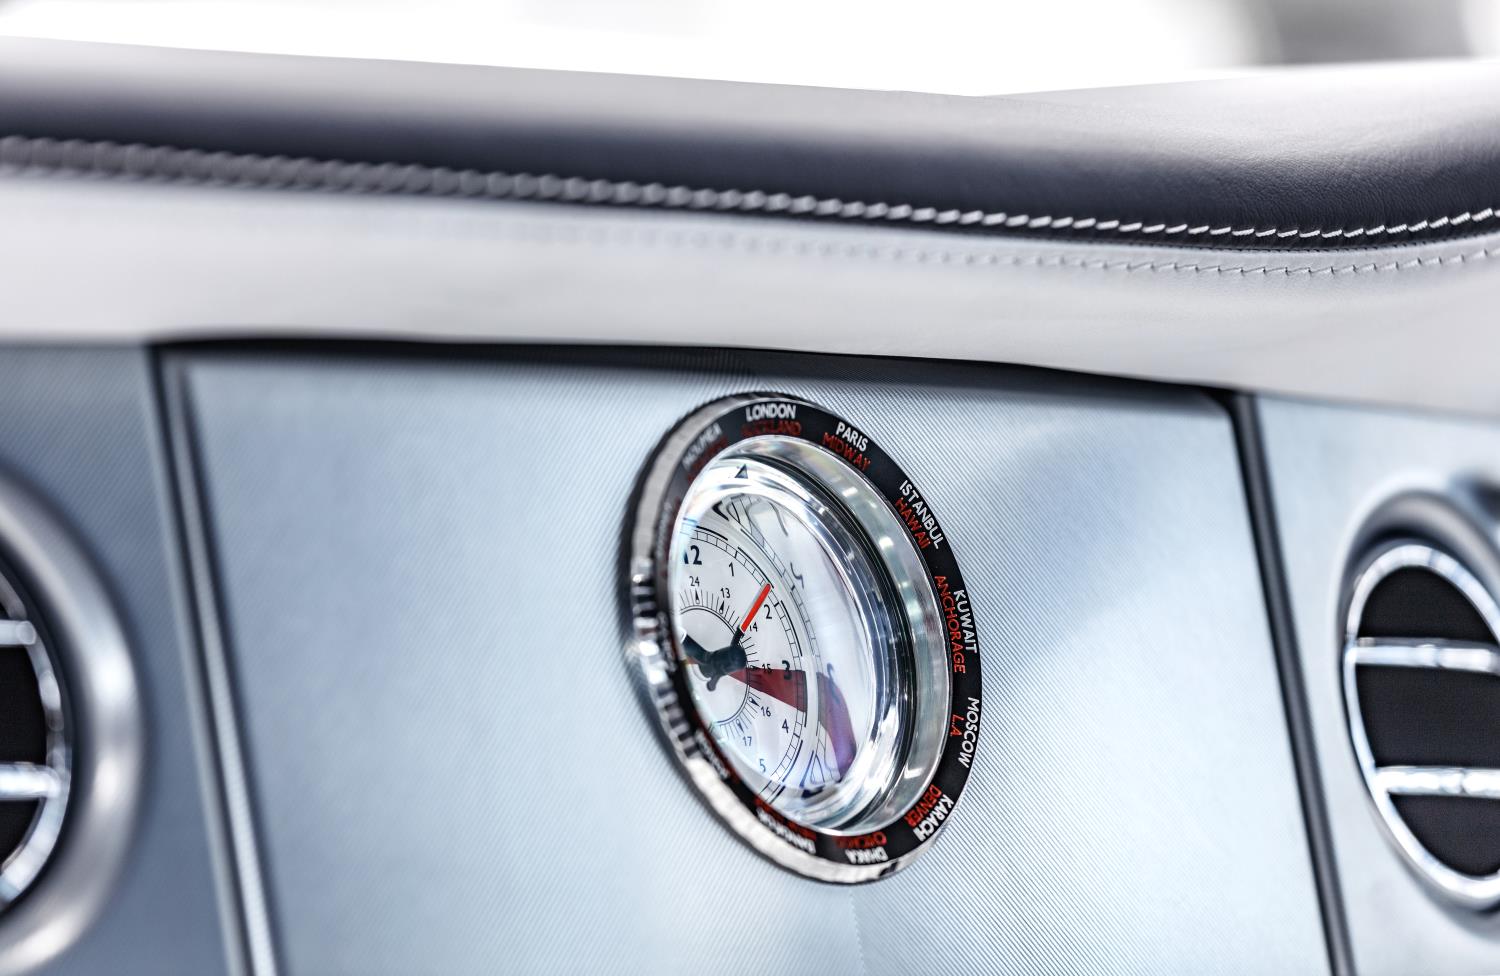 Concluye la producción del Rolls-Royce Phantom VII tras trece años en el mercado